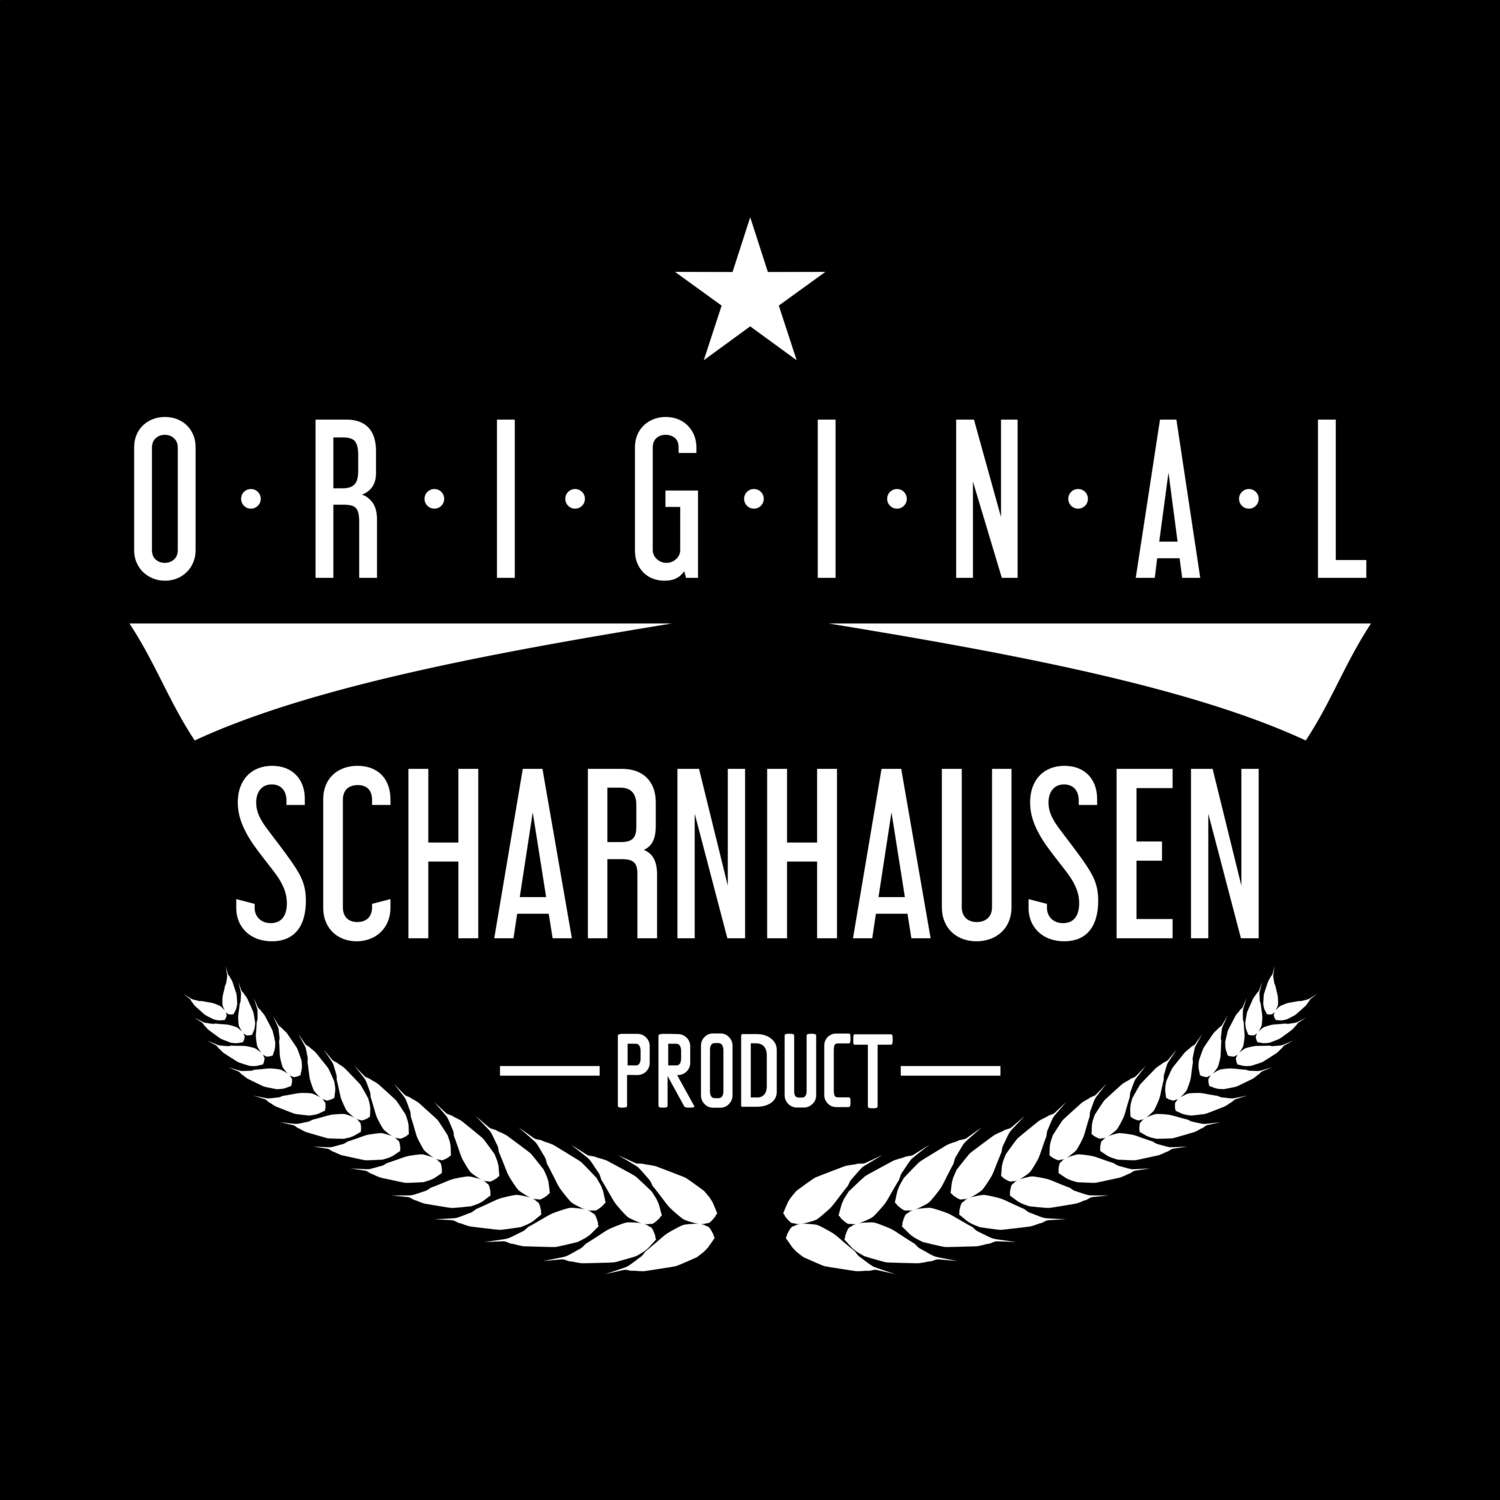 Scharnhausen T-Shirt »Original Product«